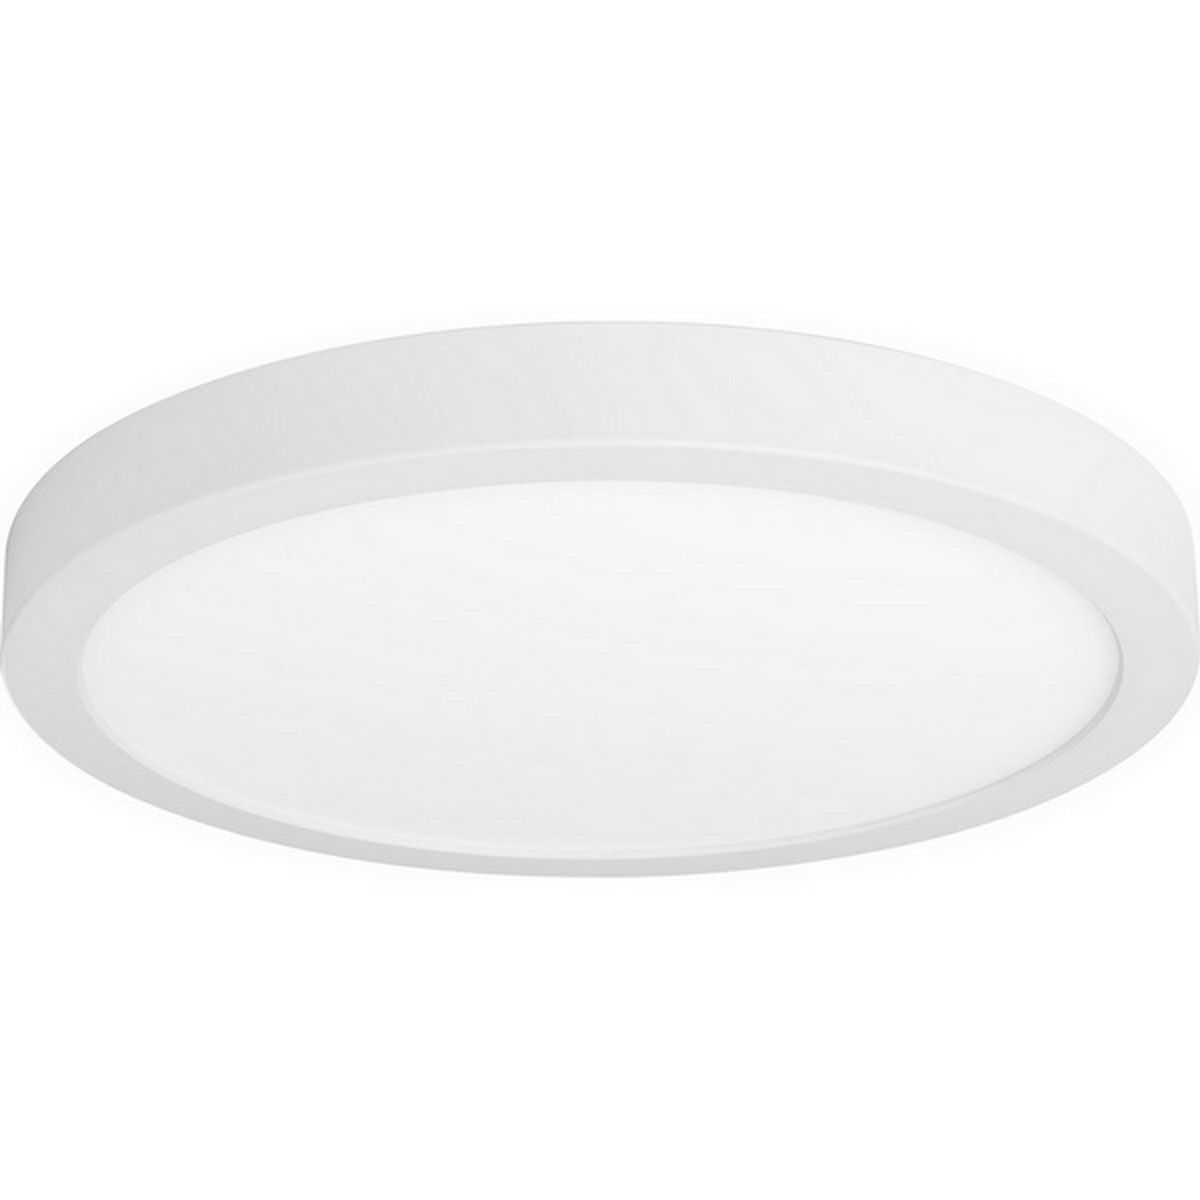 Edgelit LED Disk Light 1056 Lumens 3000K White finish